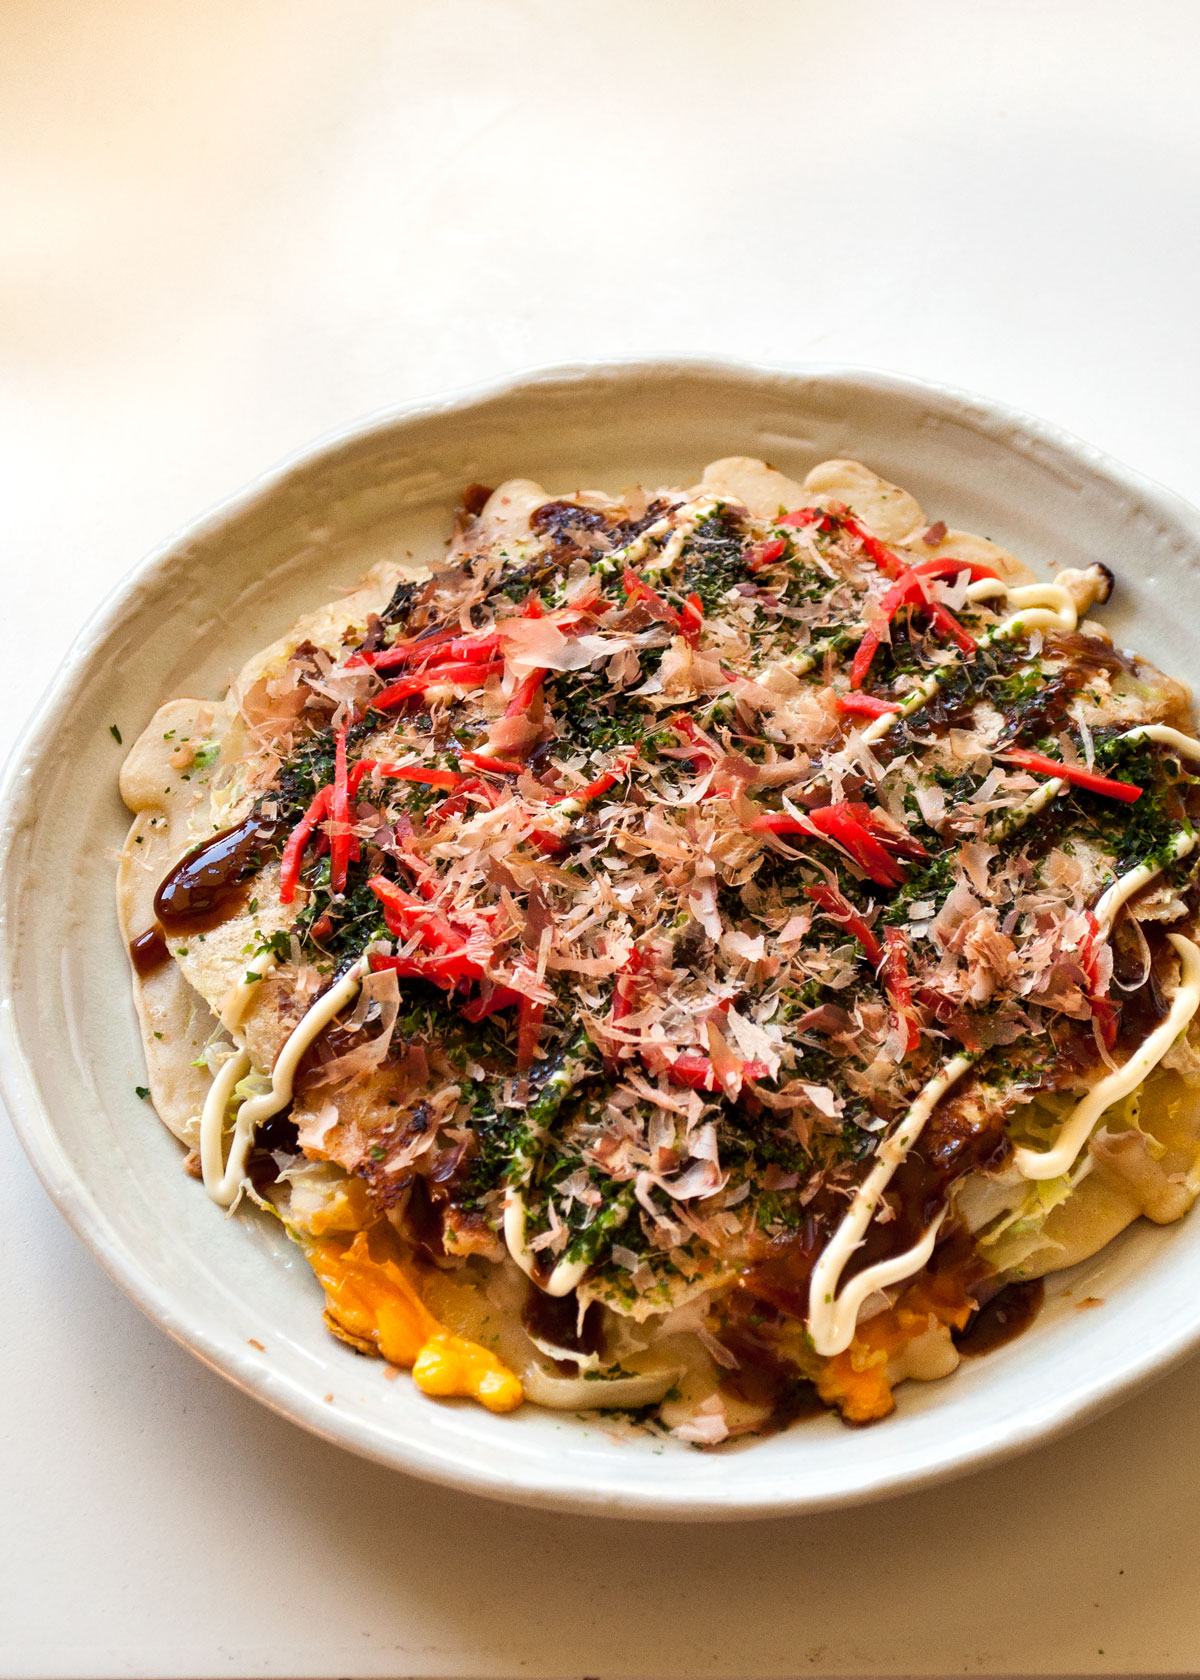 #gotujzwykopem: Okonomiyaki. Takie coś znalazłem.... - s.......g - Wykop.pl